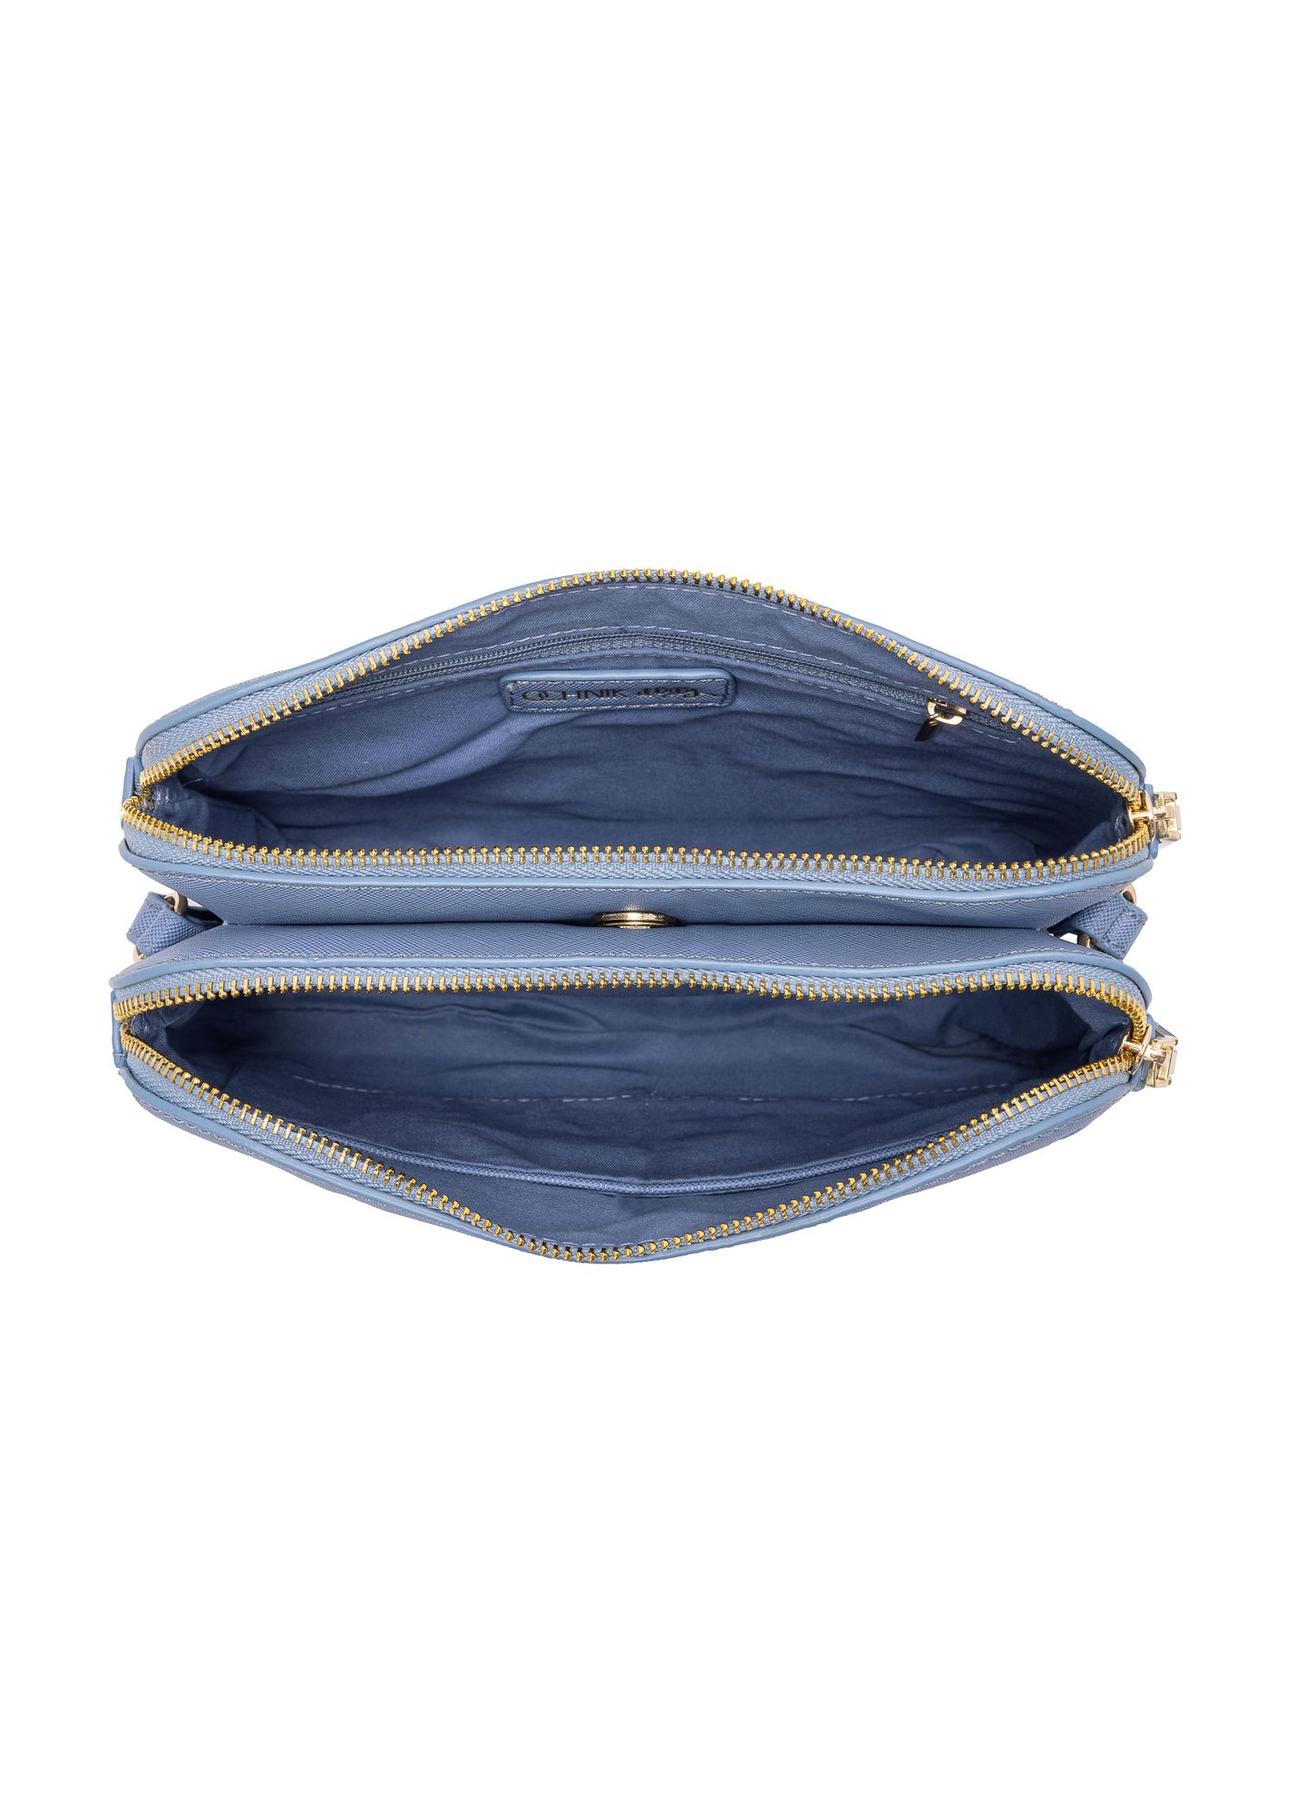 Niebieska torebka damska z tłoczeniem TOREC-0205B-61(W23)